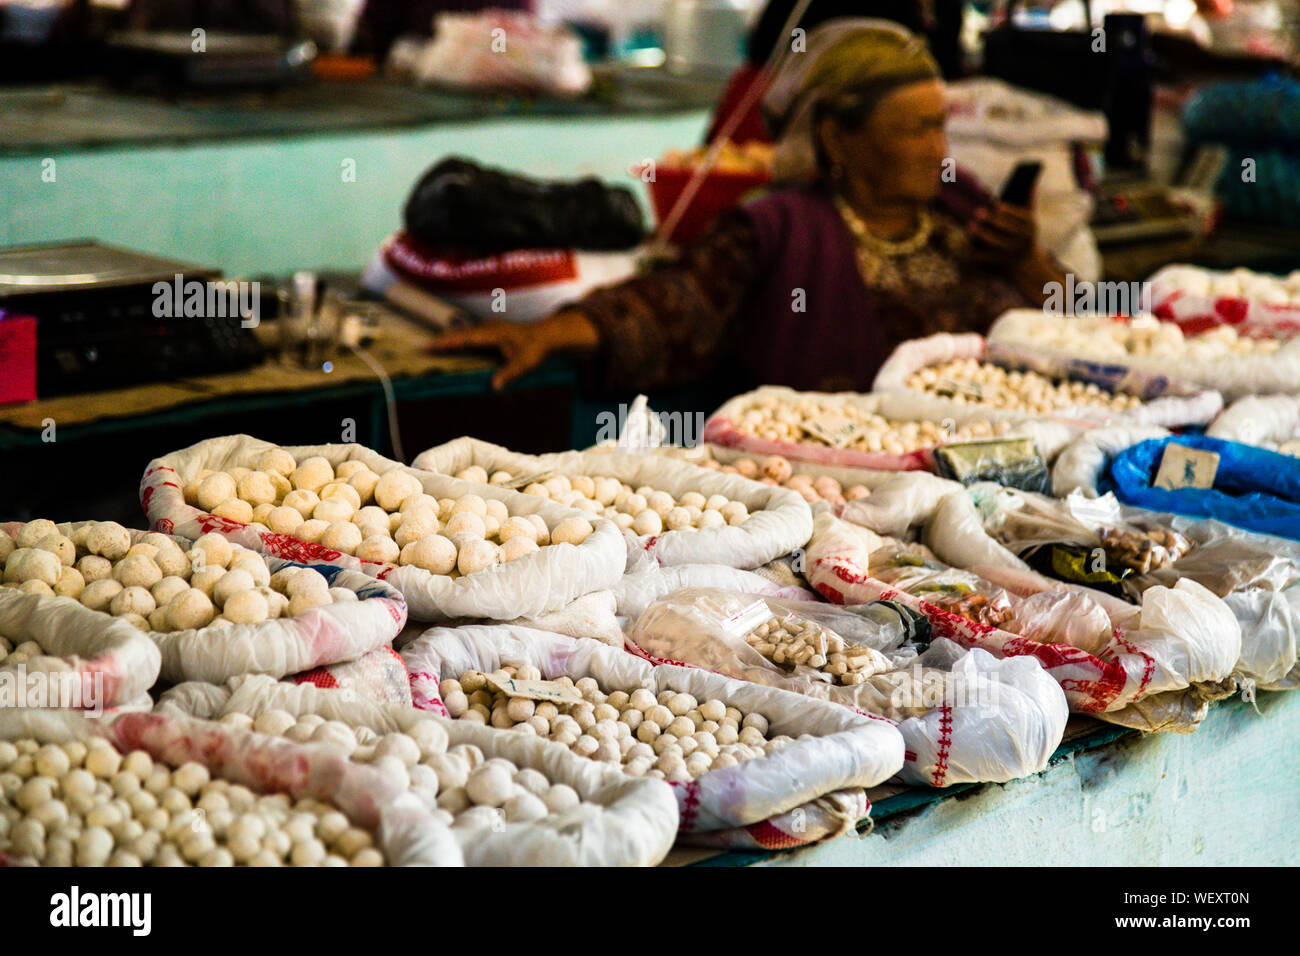 Auf dem Markt in Osch wird eine Vielzahl von Kurut angeboten. Ein dauerhaftes Essen für den Pamir Highway. Die harten salzigen Kugeln basieren auf getrocknetem Joghurt oder sauren Milchmischungen. Kashk auf dem Markt der Stadt Osch, Kirgisistan Stockfoto